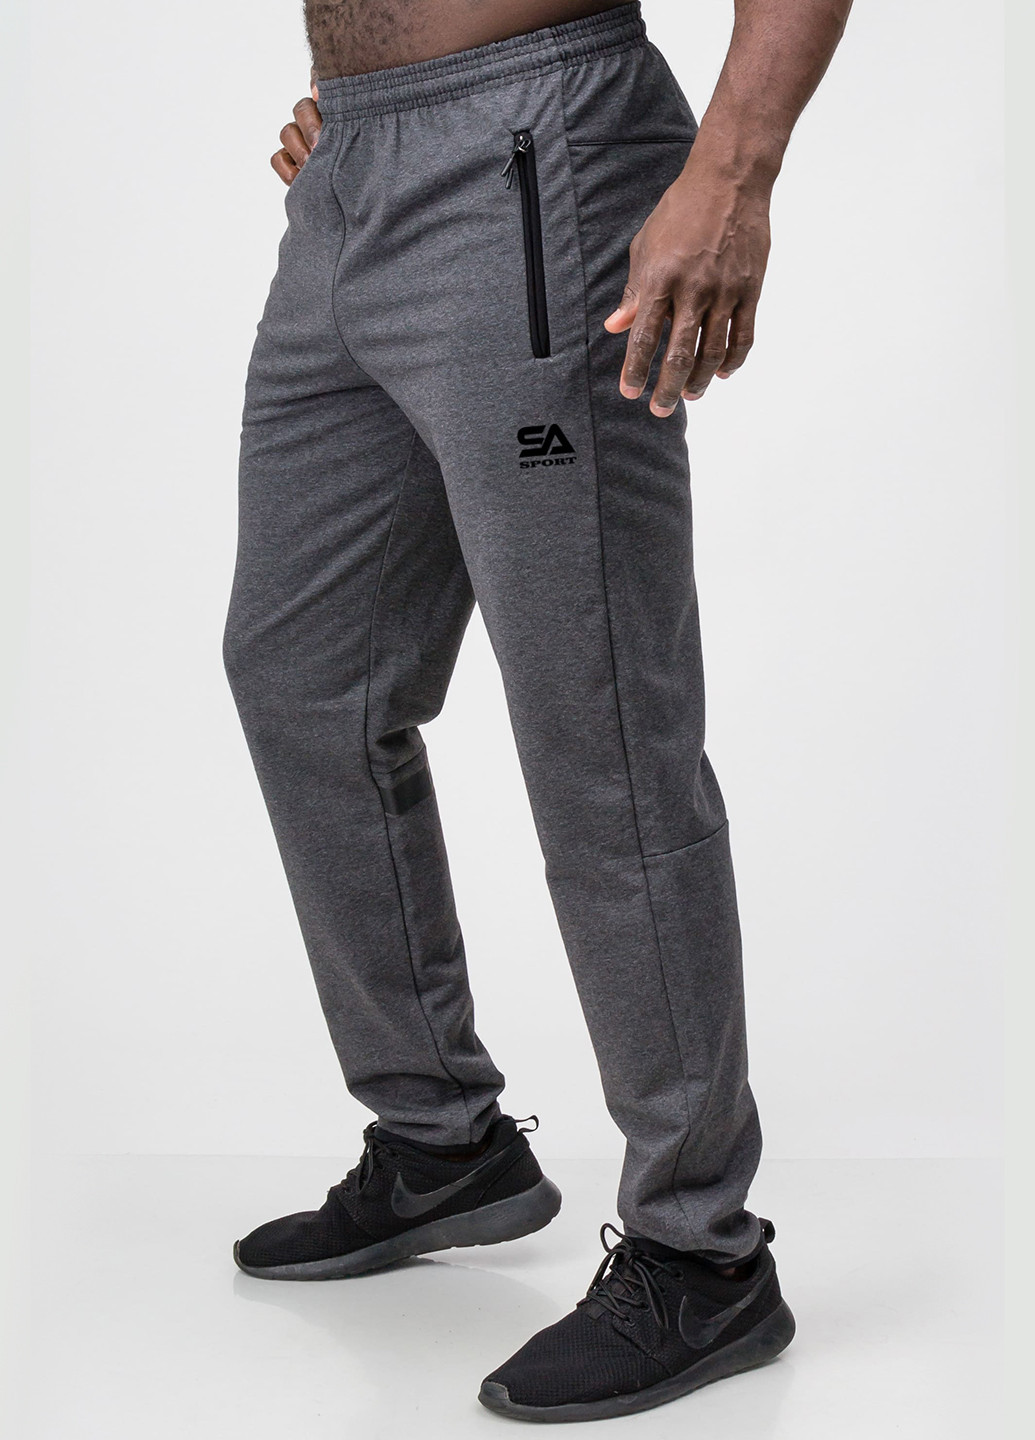 Темно-серые спортивные демисезонные зауженные брюки SA-sport